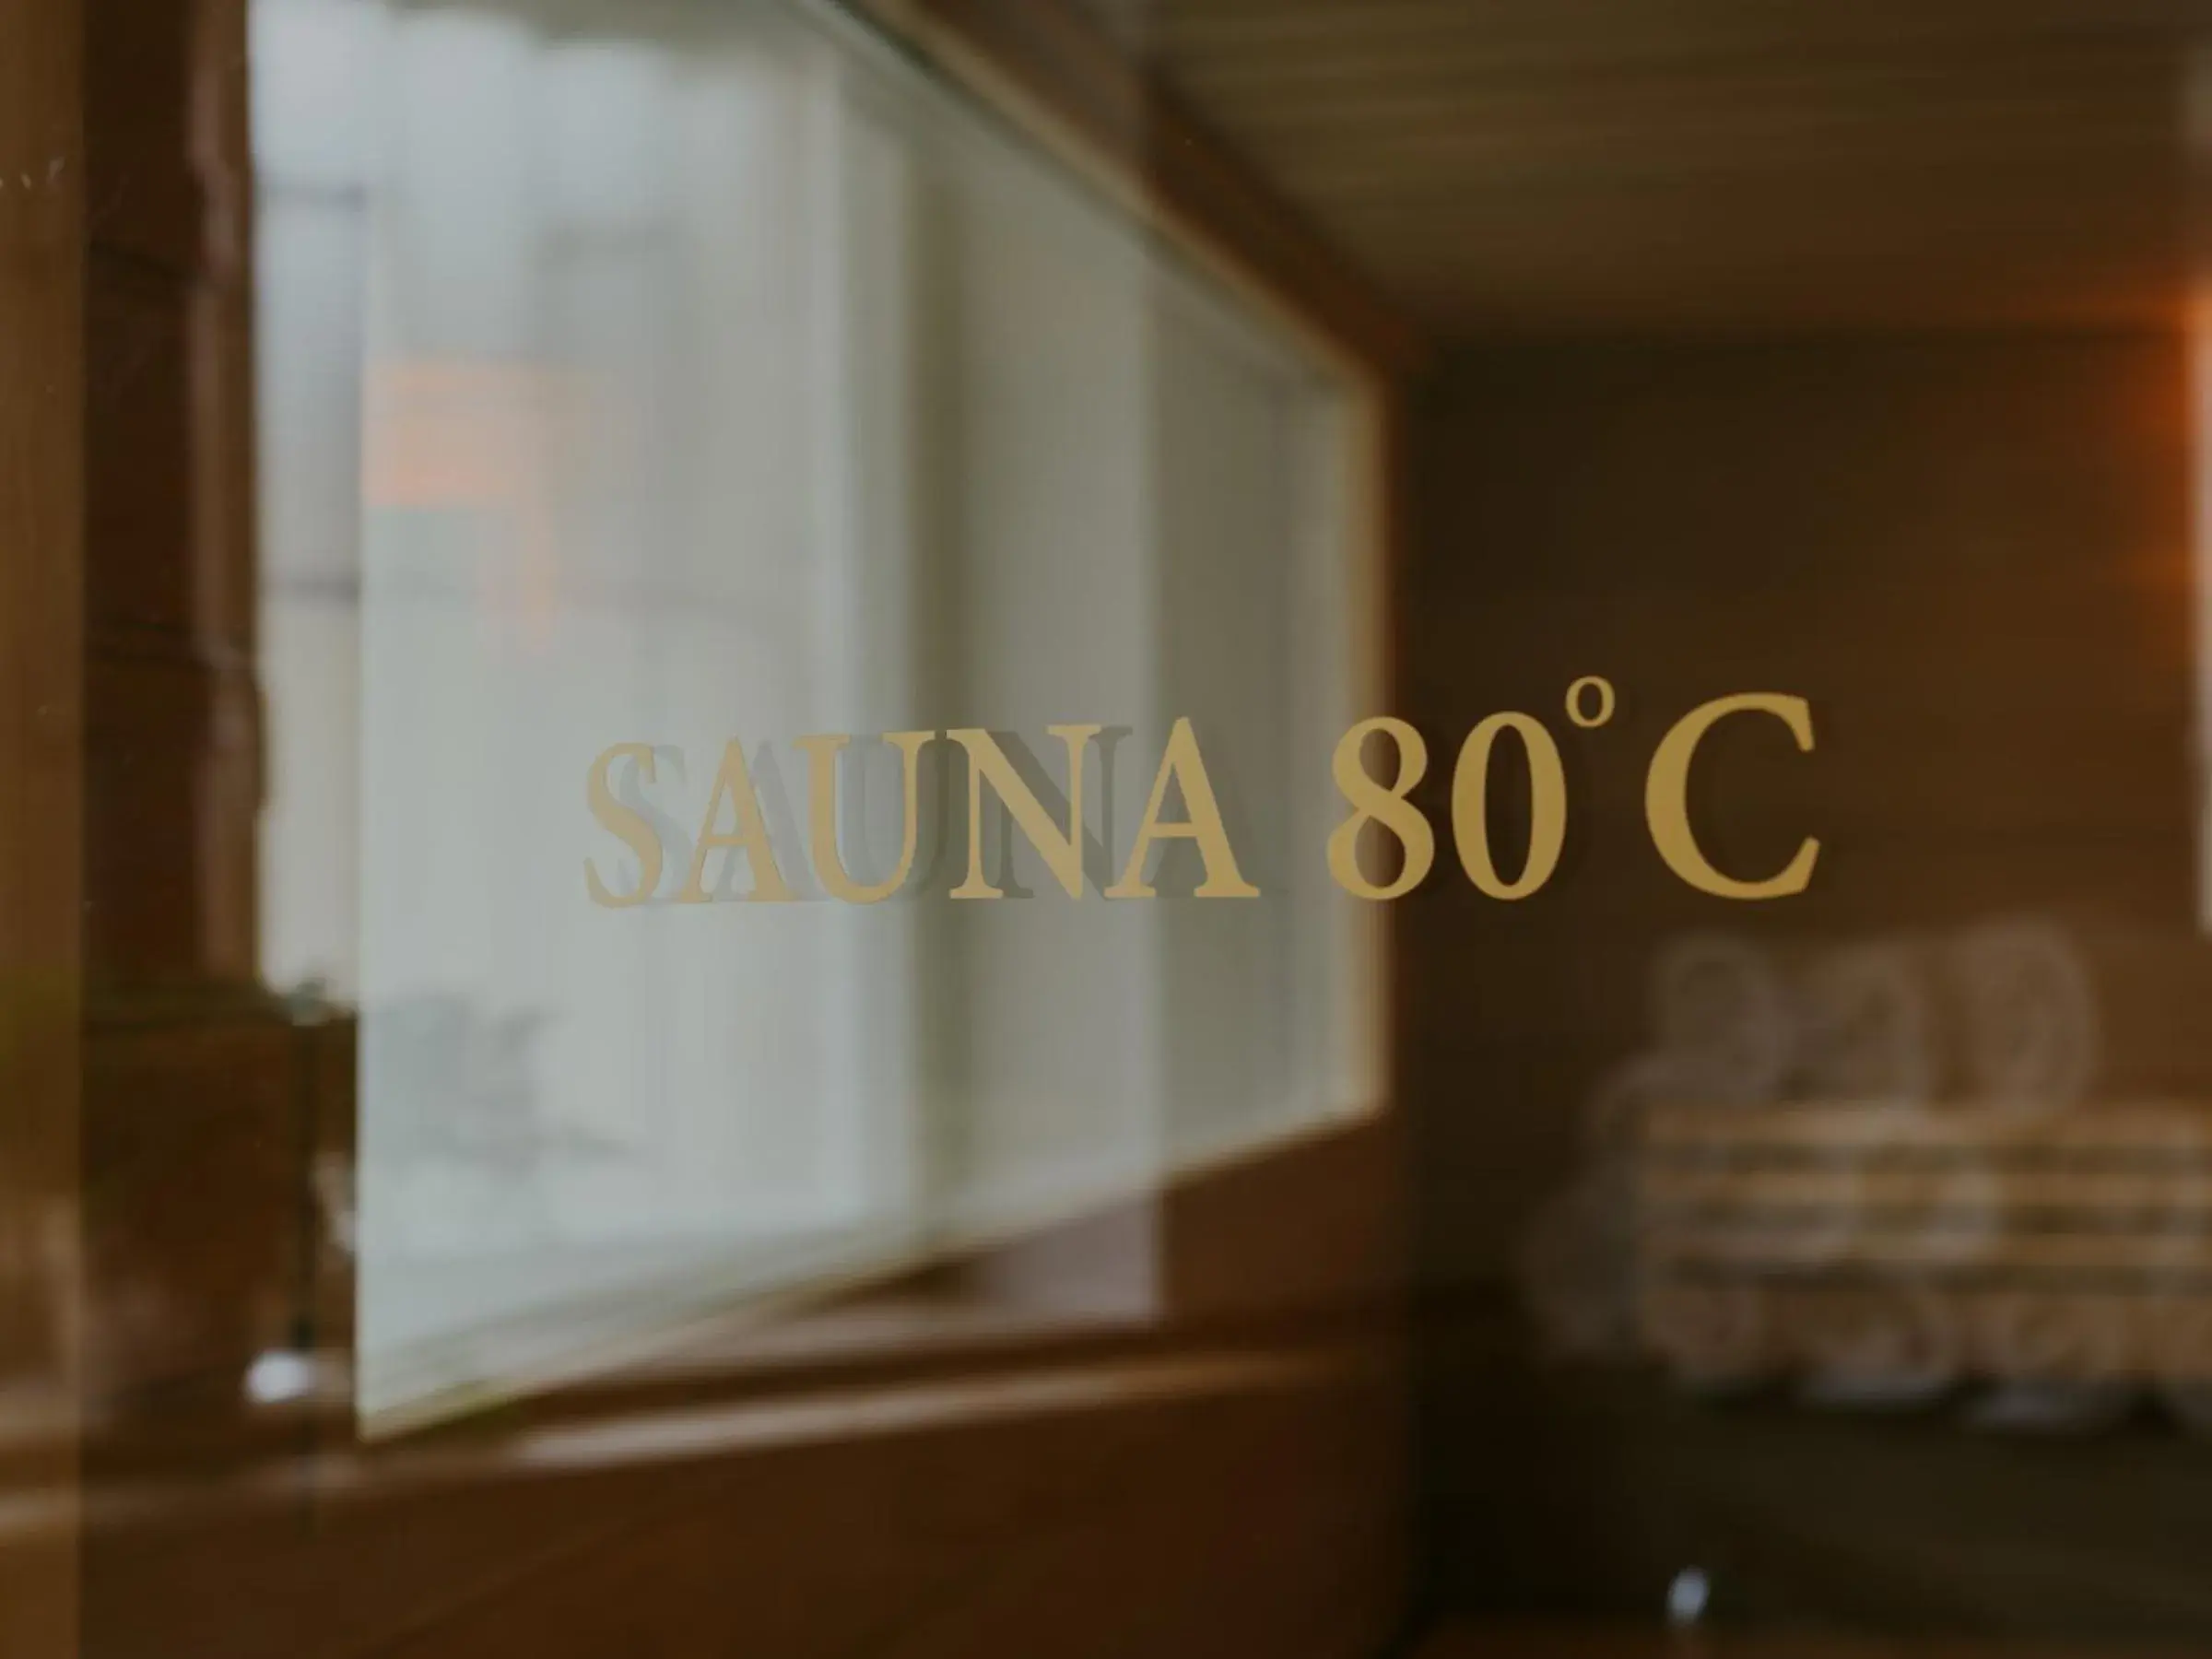 Sauna, Property Logo/Sign in Bad Hotel Überlingen